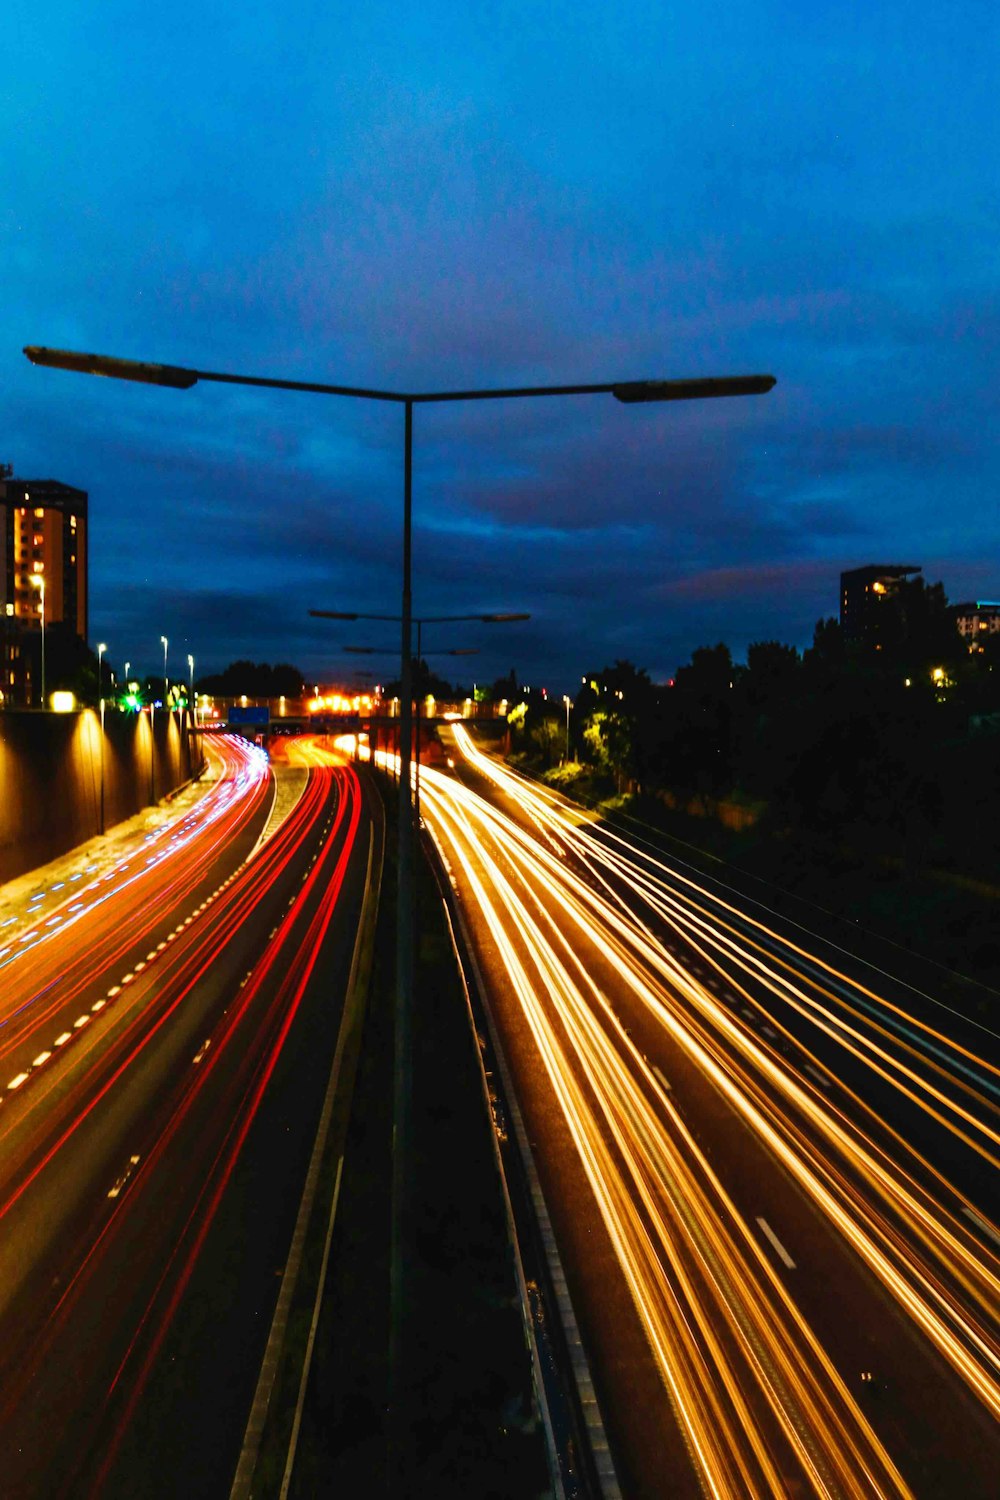 Zeitrafferfotografie von vorbeifahrenden Autos auf der Straße während der Nacht